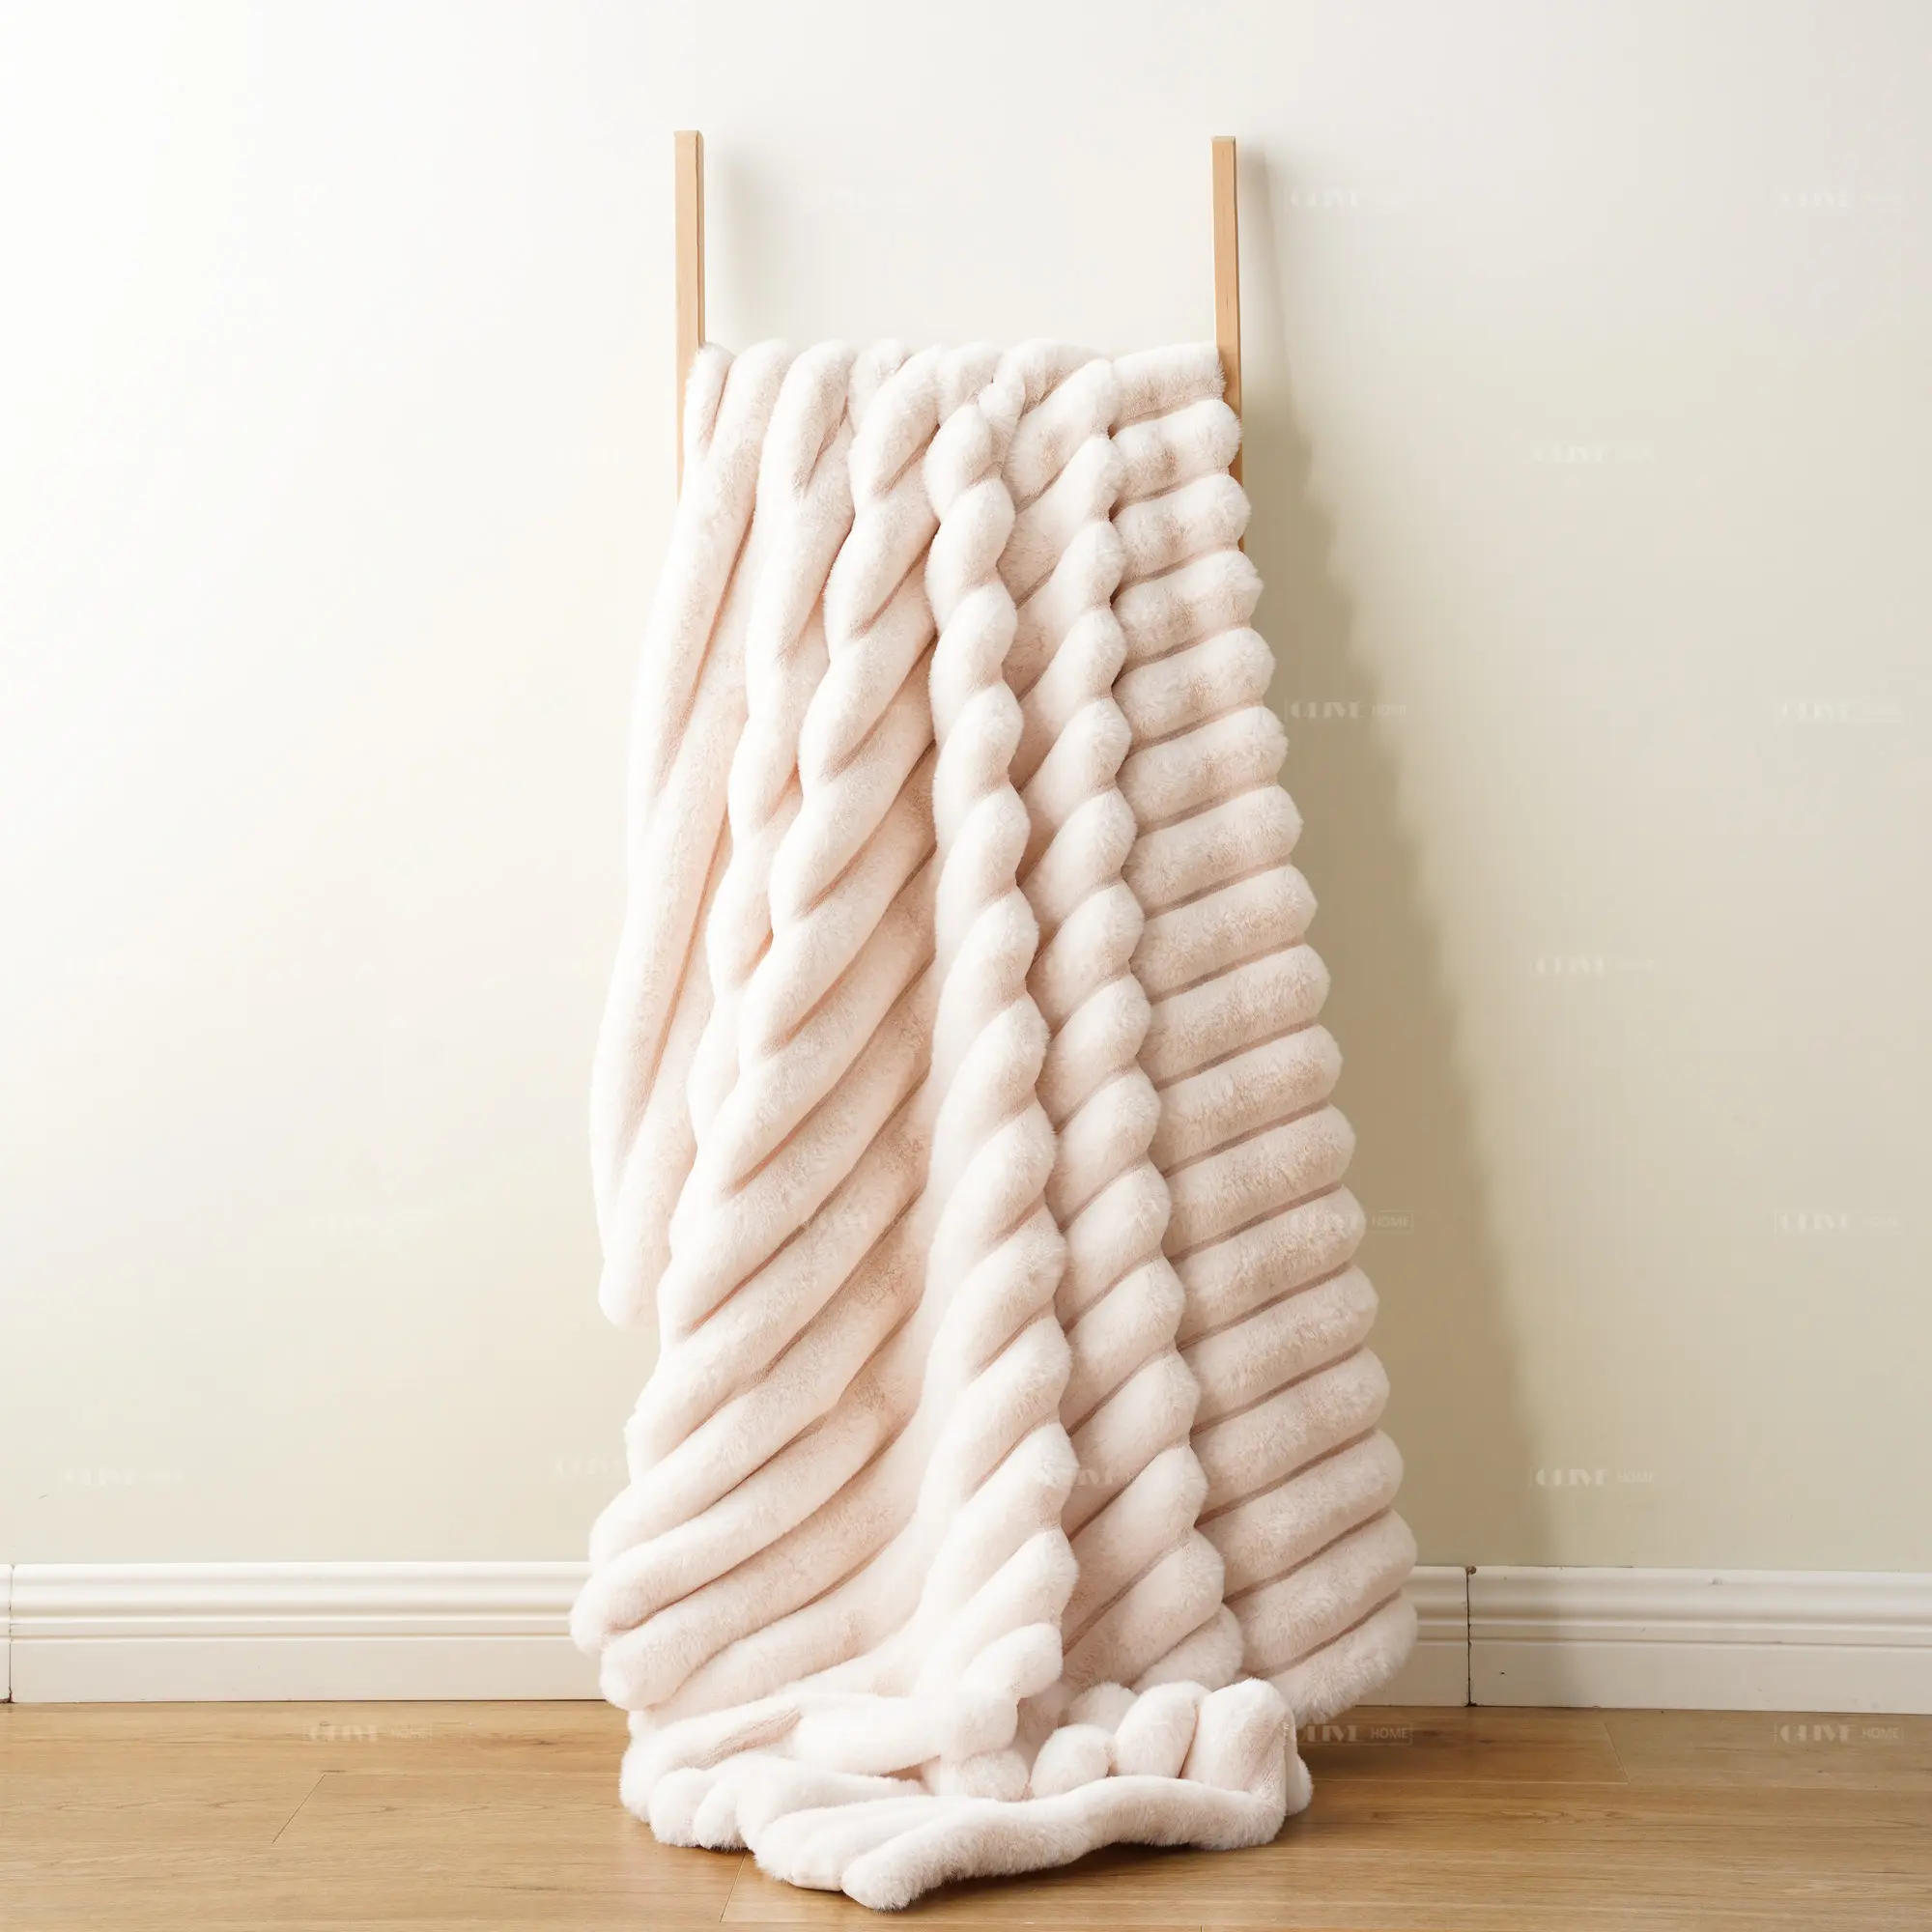 सर्दियों के रोब कोट के लिए सफेद धारीदार कृत्रिम खरगोश फर का कपड़ा, कंबल फेंकना खरगोश धारी कृत्रिम फर का कपड़ा यार्ड कम MOQ द्वारा बेचा जाता है